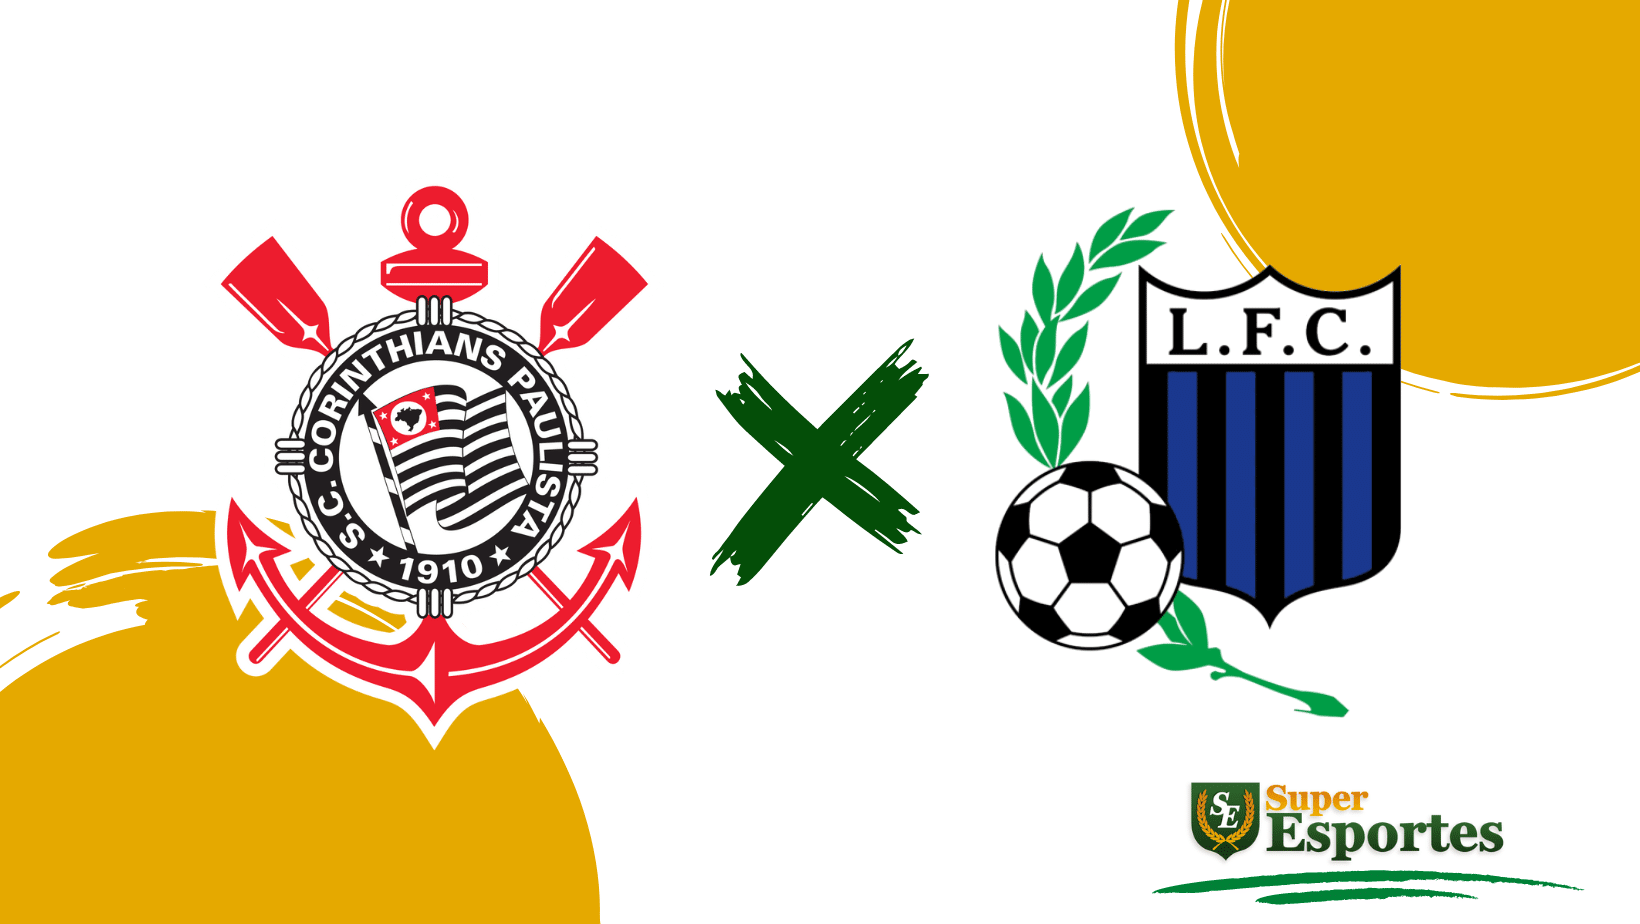 Saiba onde assistir os jogos da 3ª rodada da Libertadores - Gazeta Esportiva